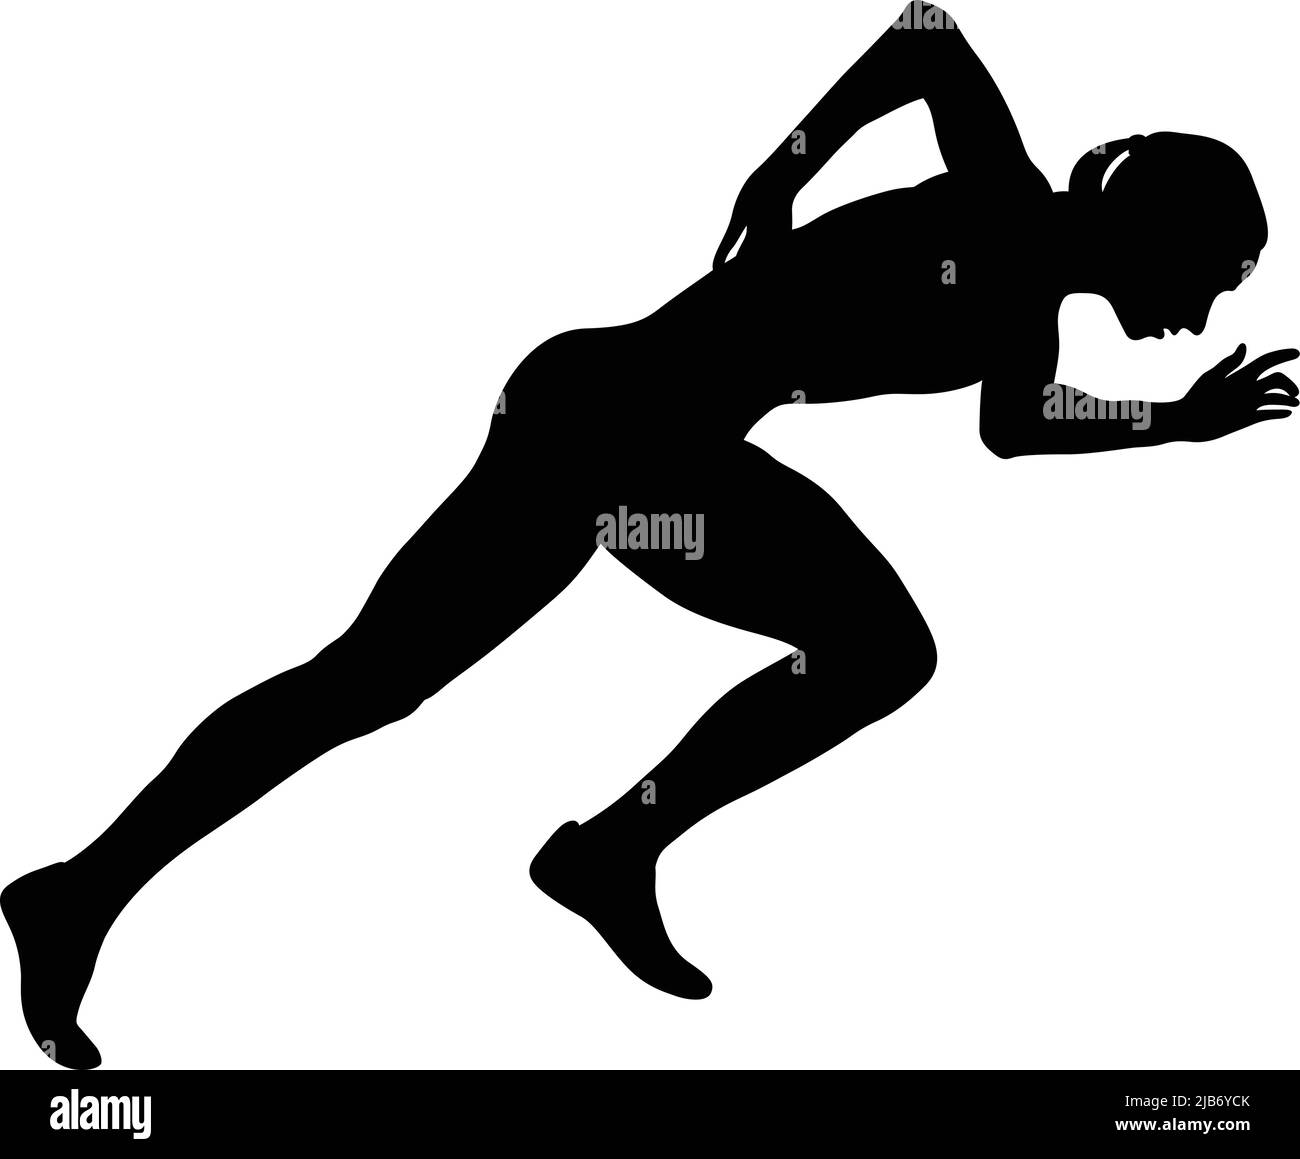 start running girl athlete black silhouette Stock Vector